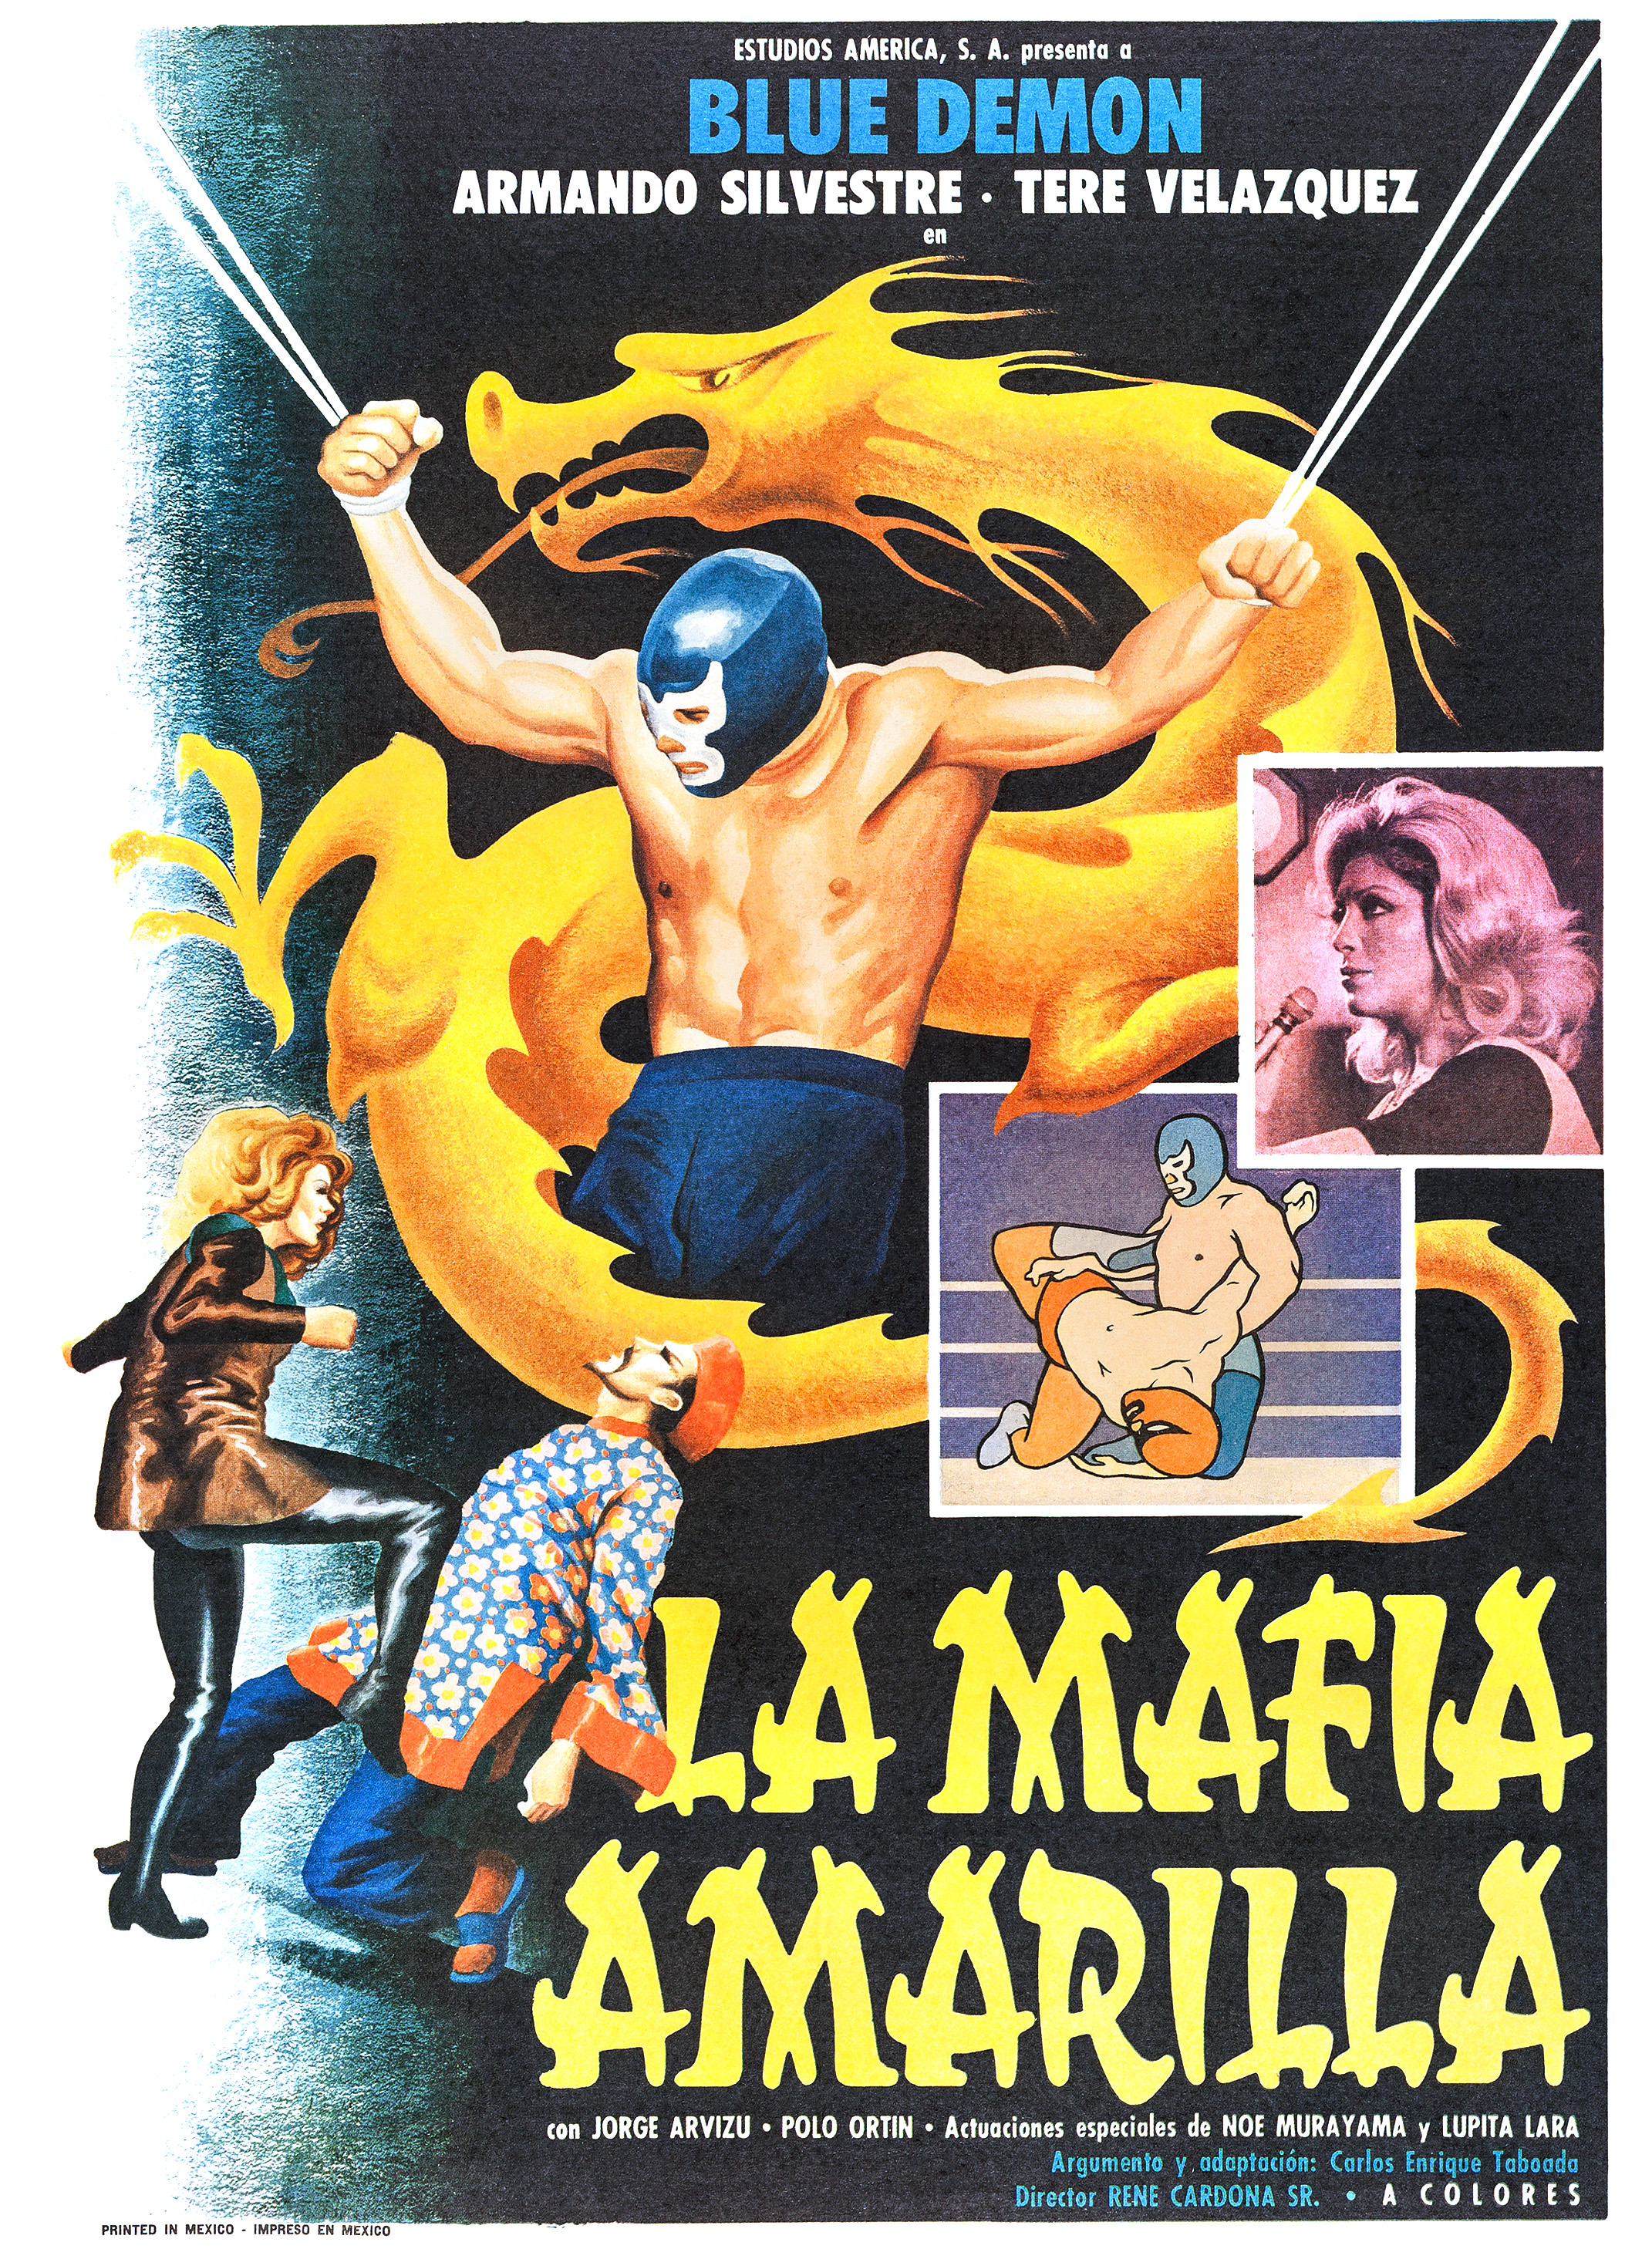 La mafia amarilla (1975) Screenshot 2 